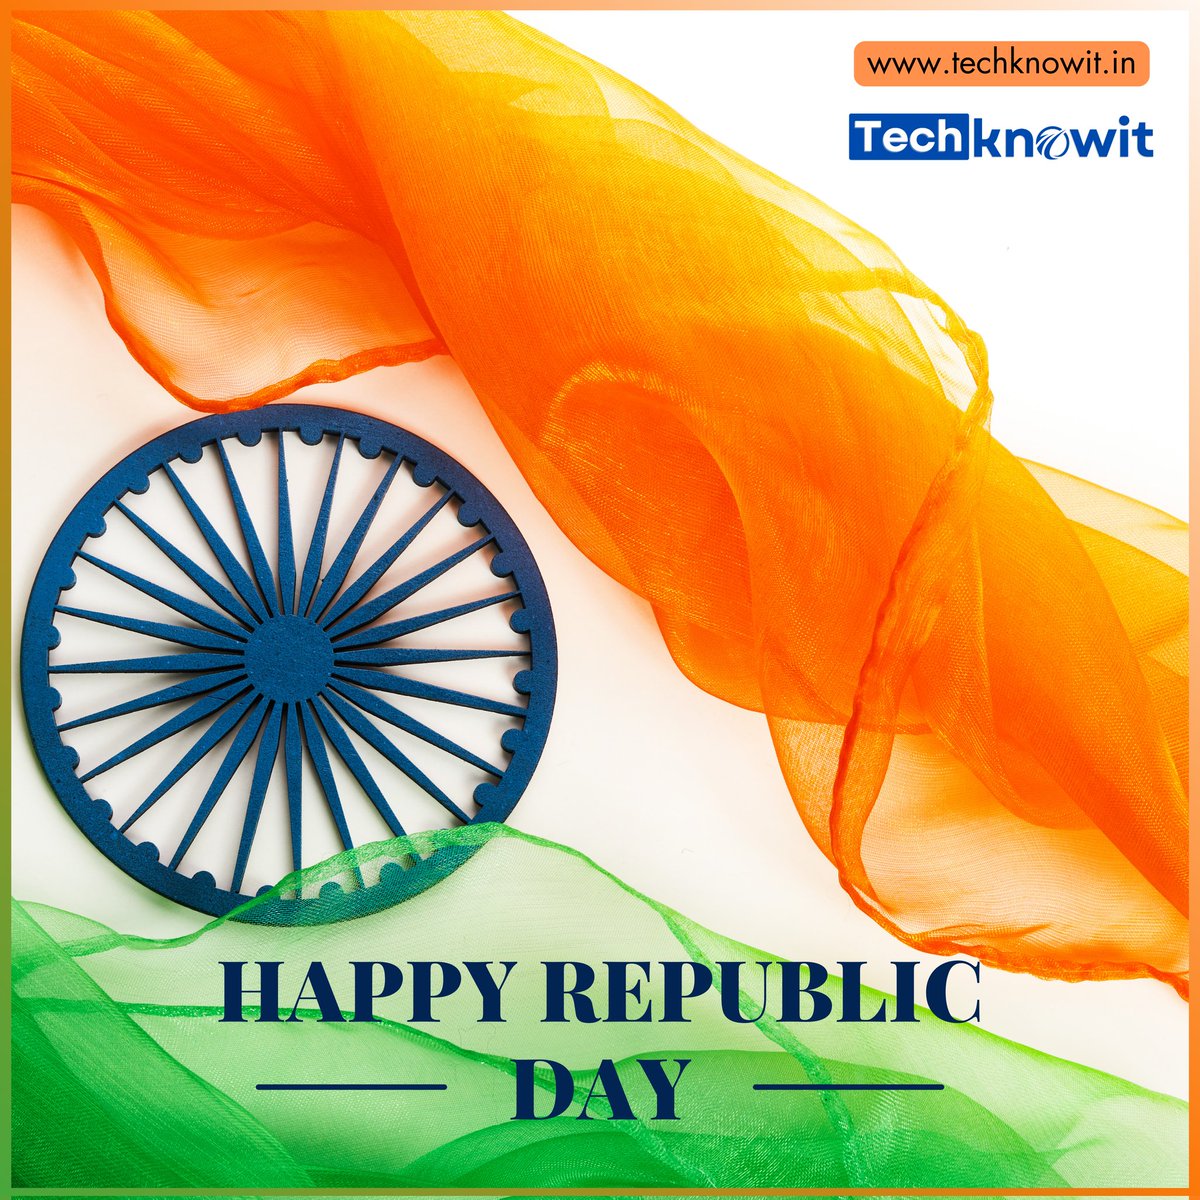 Happy Republic Day..जय हिंद! प्रजासत्ताक दिनाच्या हार्दिक शुभेच्छा.. प्रजासत्ताक दिन चिरायू होवो... #RepublicDay #techknowit